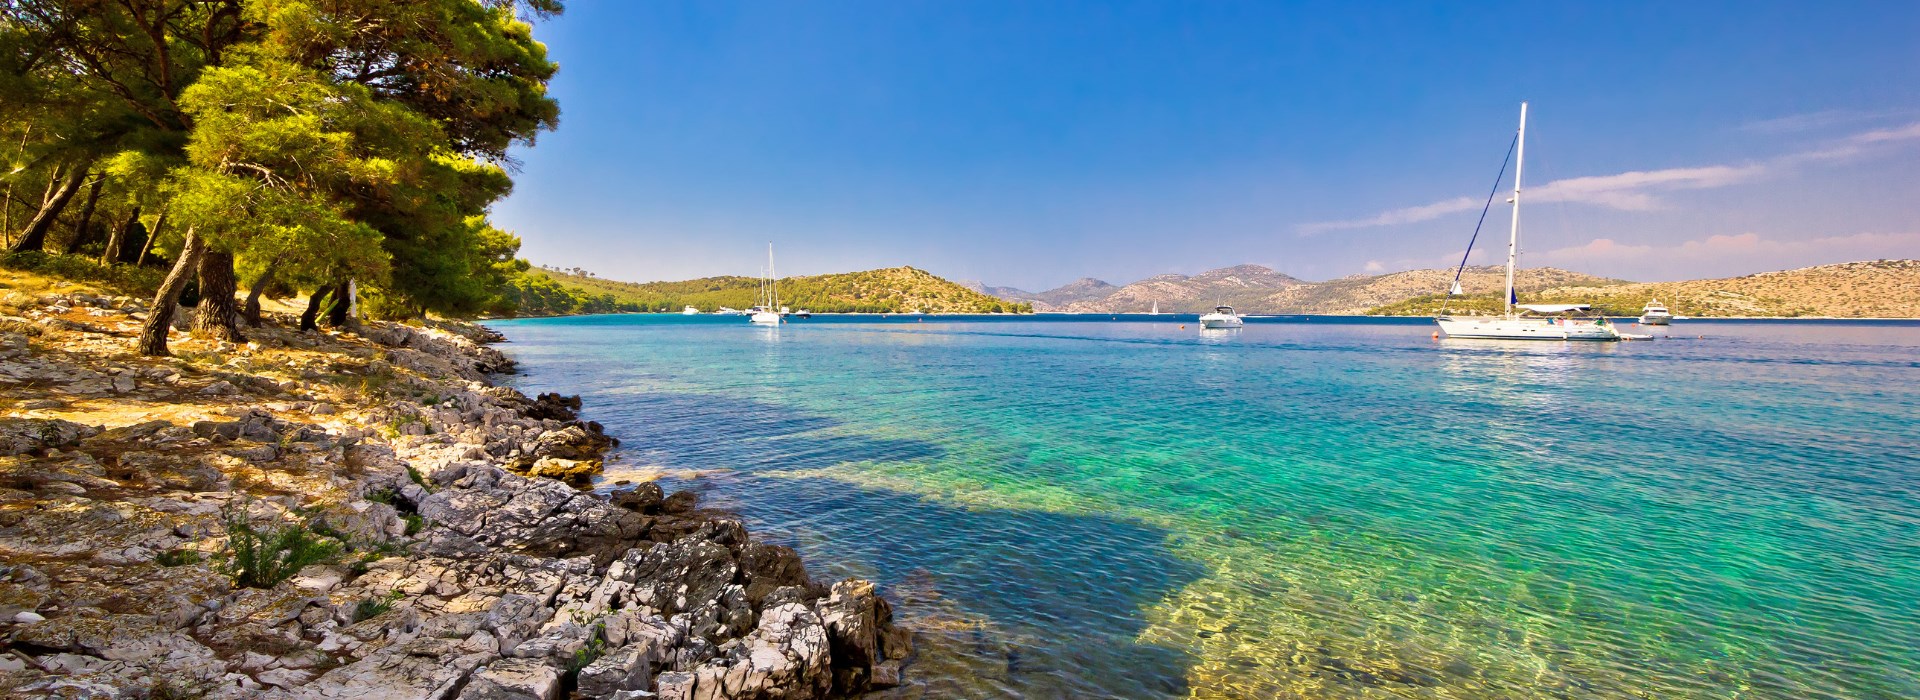 Visiter L'Ile de Korčula - Montenegro-Croatie